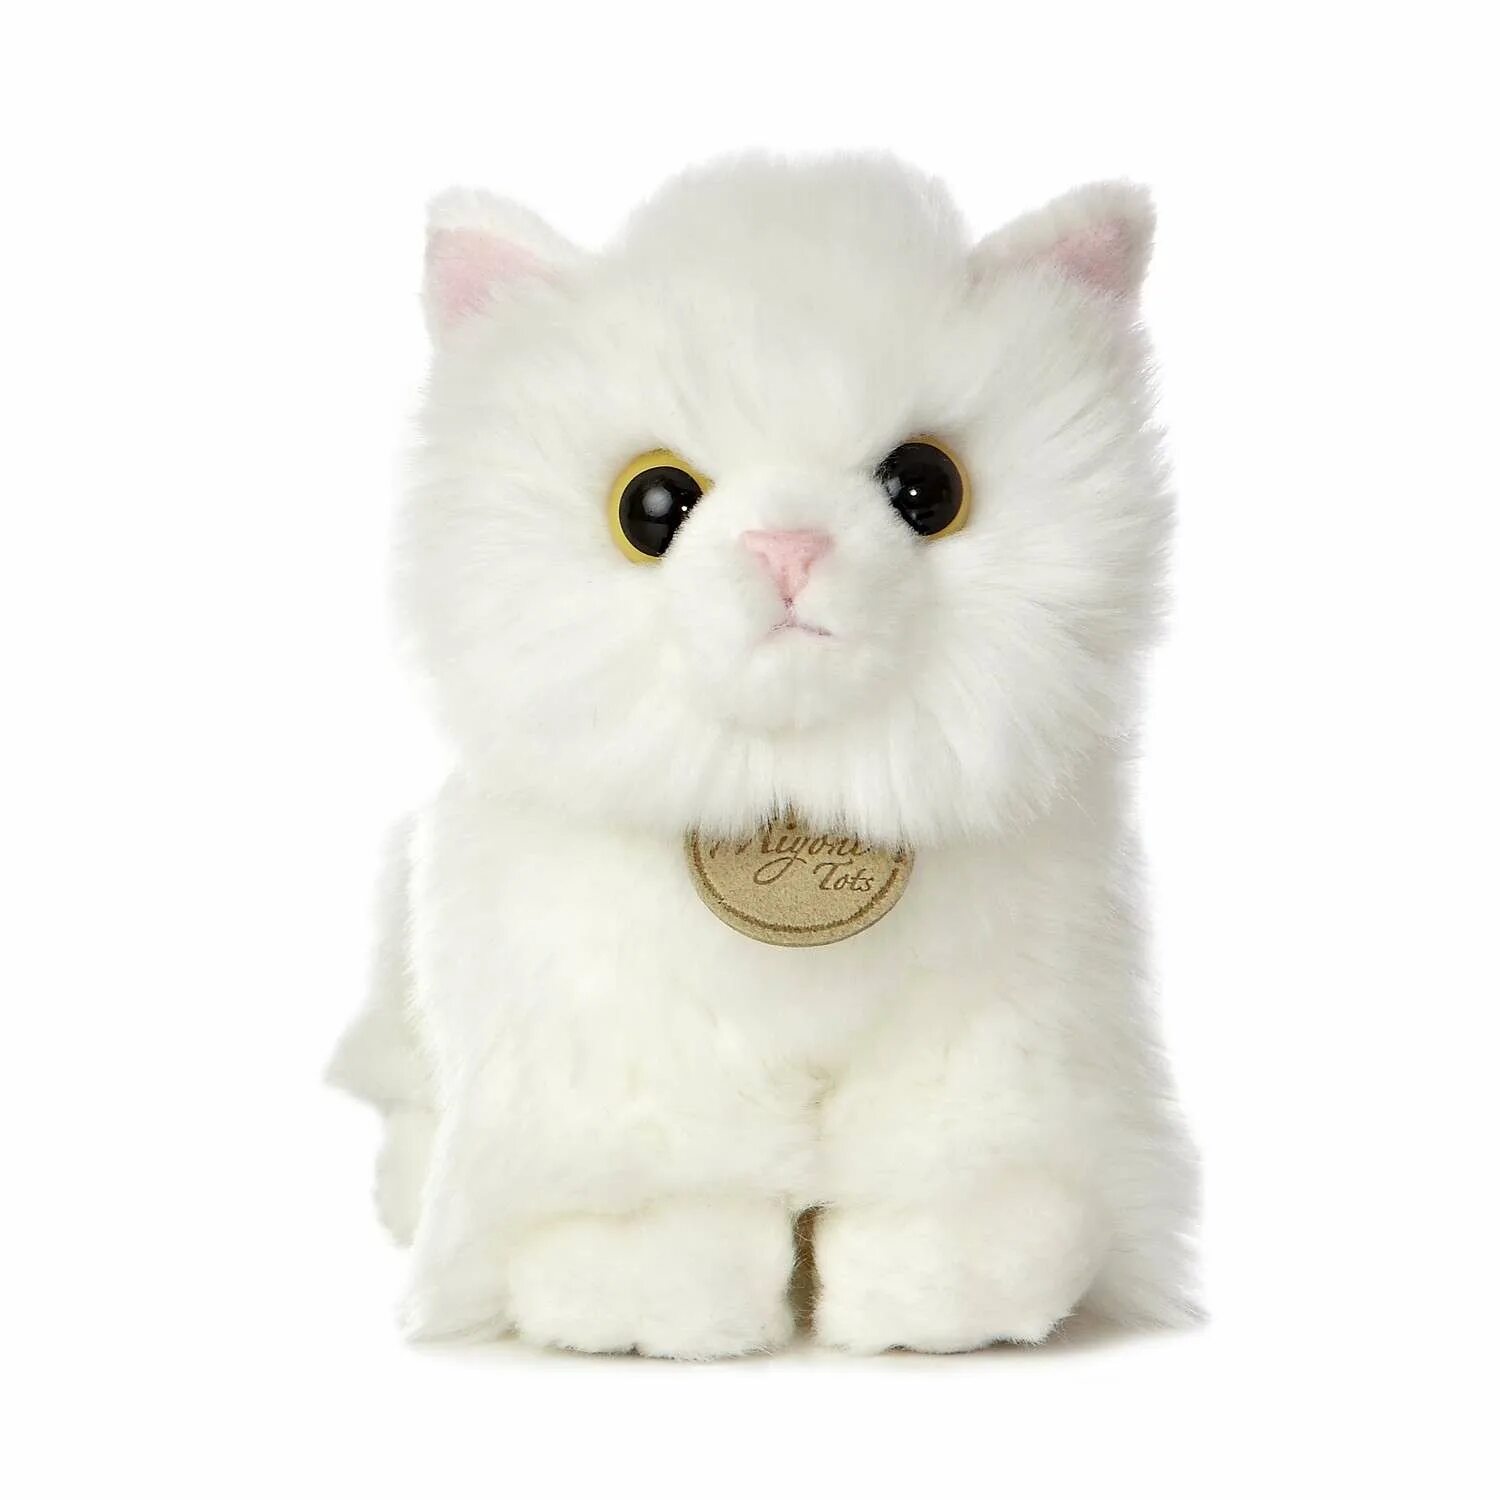 Белую кошку белую кошку игрушку. Мягкая игрушка Aurora ангорский котёнок 20 см. Игрушки Aurora Miyoni. Aurora 7.5 Miyoni Angora Kitten Plush stuffed animal Toy 26220 brand New. Игрушки Aurora Miyoni кошки.